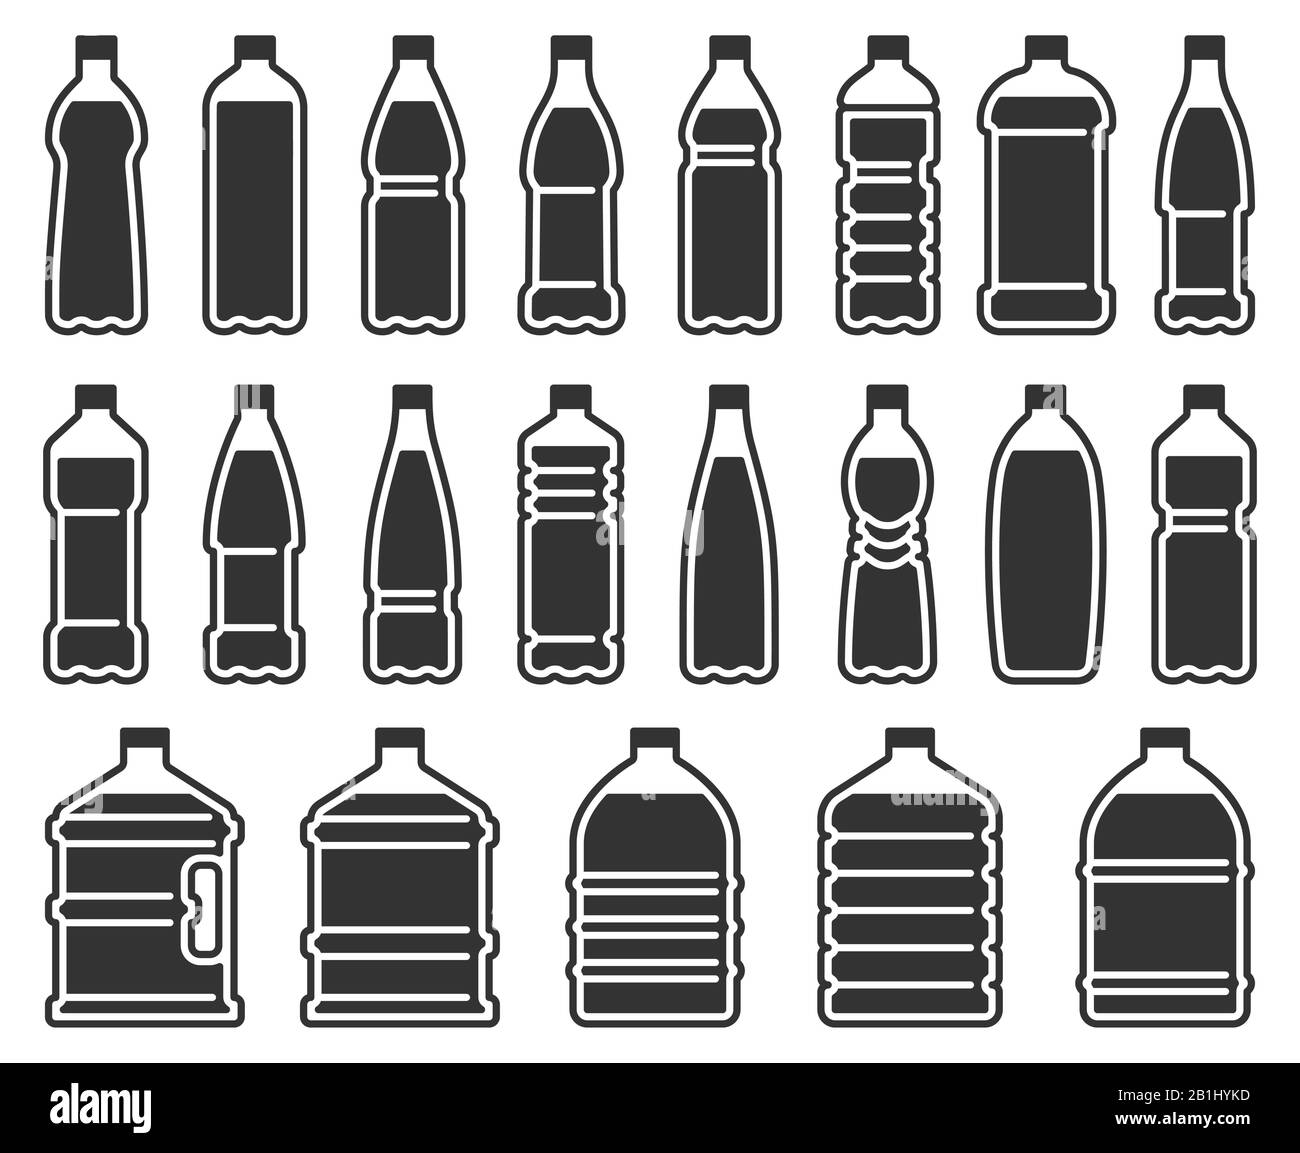 Silhouettensymbol für Plastikflaschen. Mineralwasser Getränkeflasche, kühlere reine Flüssigkeiten Paket Schablonenvektor-Icons Set Stock Vektor